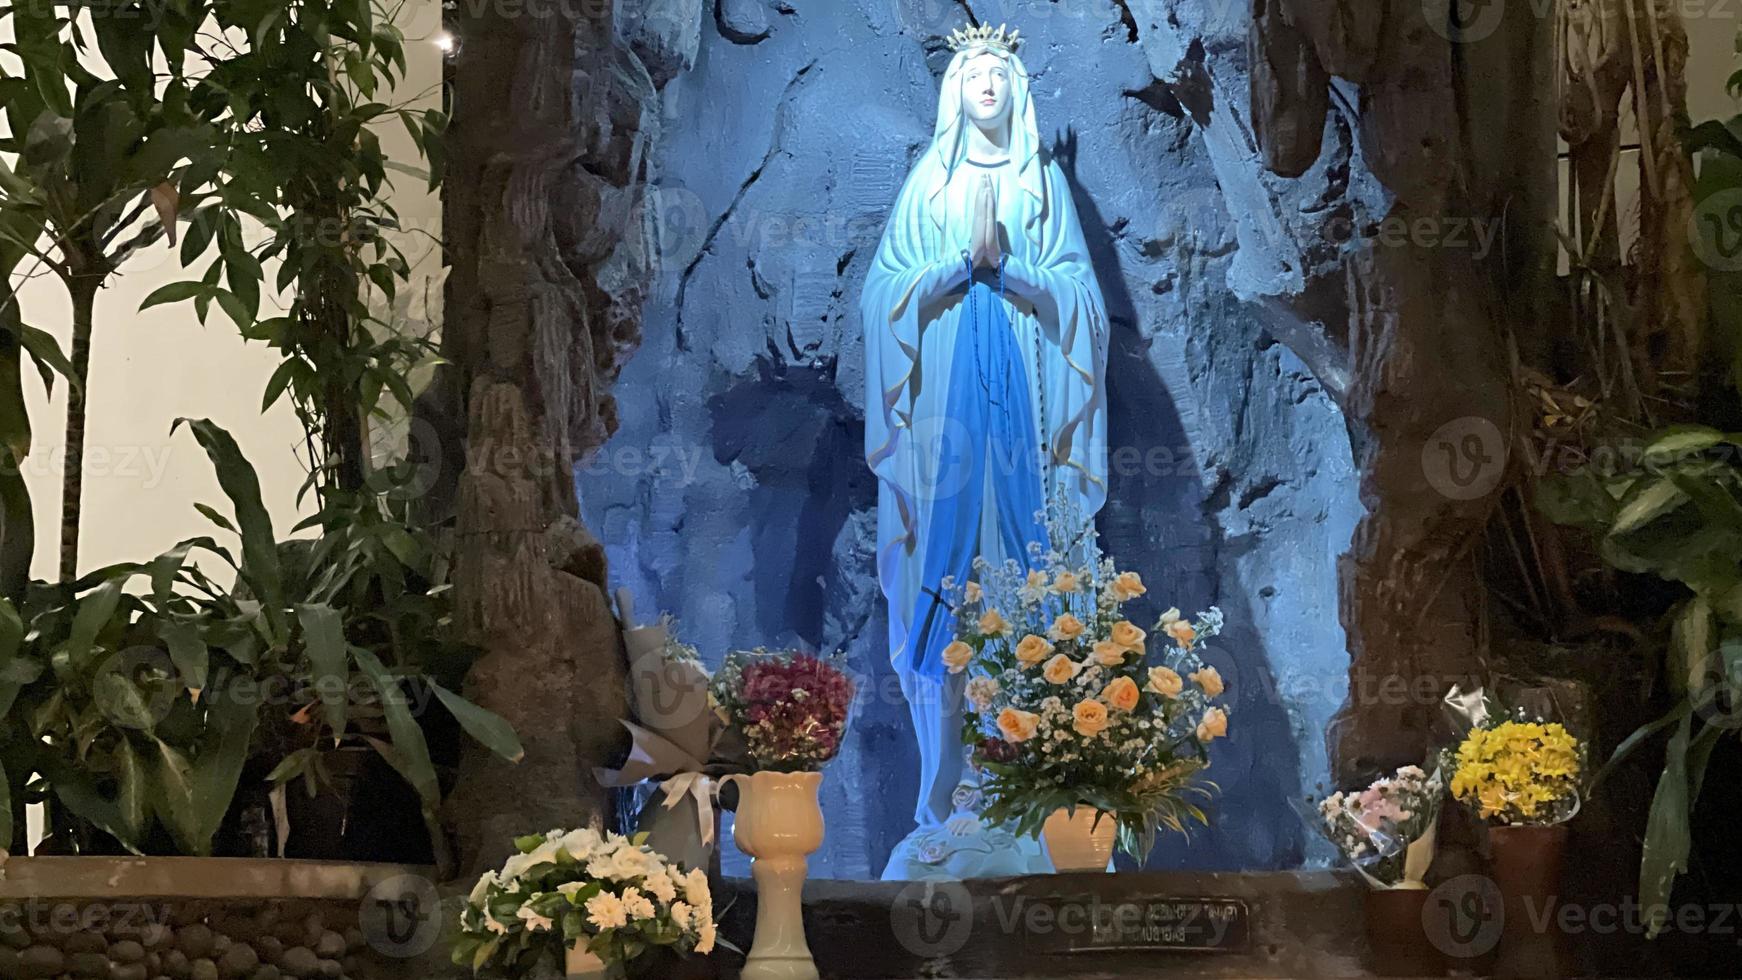 a caverna da virgem maria, estátua da virgem maria em uma capela de caverna de pedra igreja católica com vegetação tropical foto